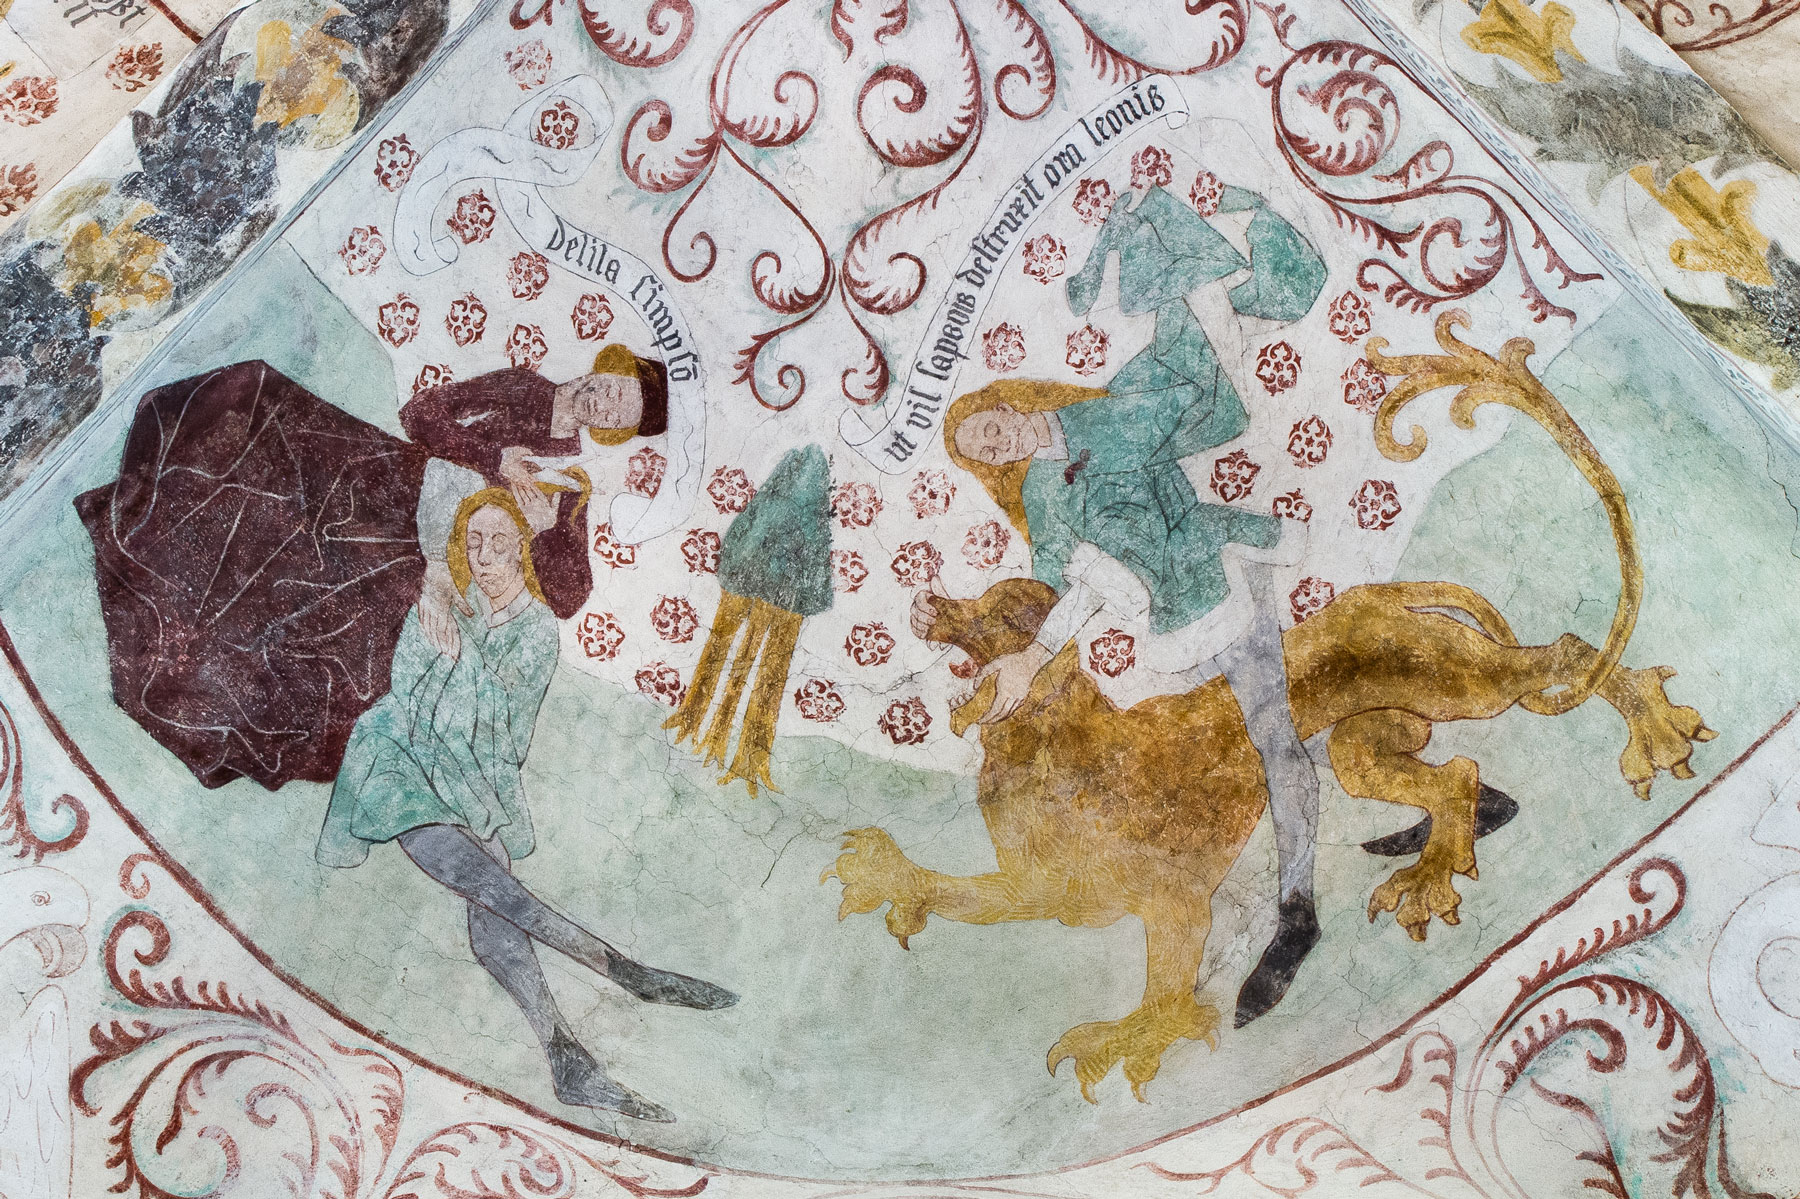 Simson får håret klippt av Delila; Simson bänder isär lejonets käftar - Vänge kyrka